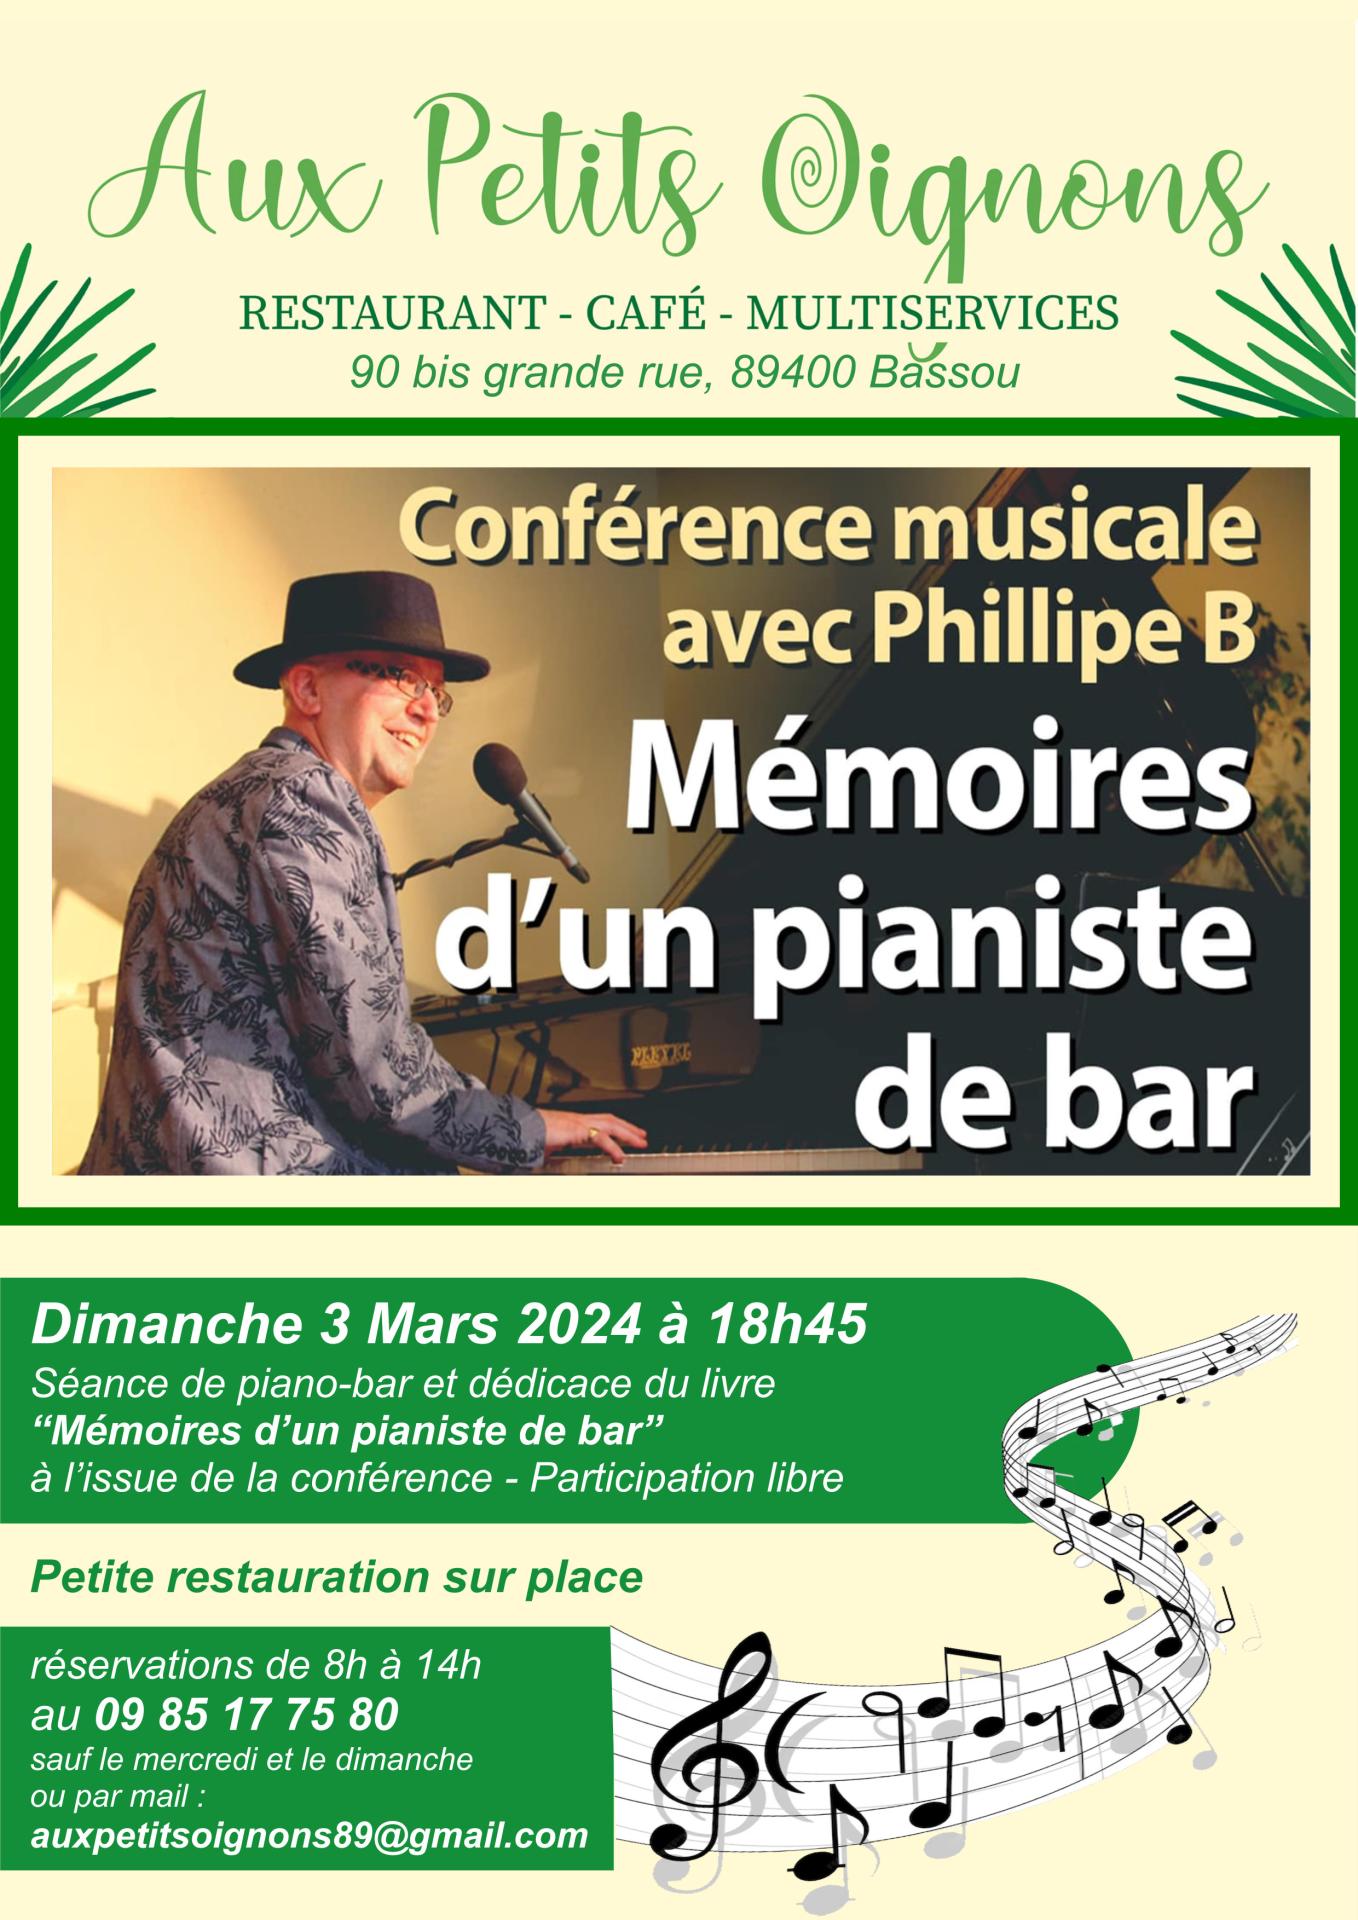 Dimanche 3 mars 2024 Mémoires d'un pianiste de bar